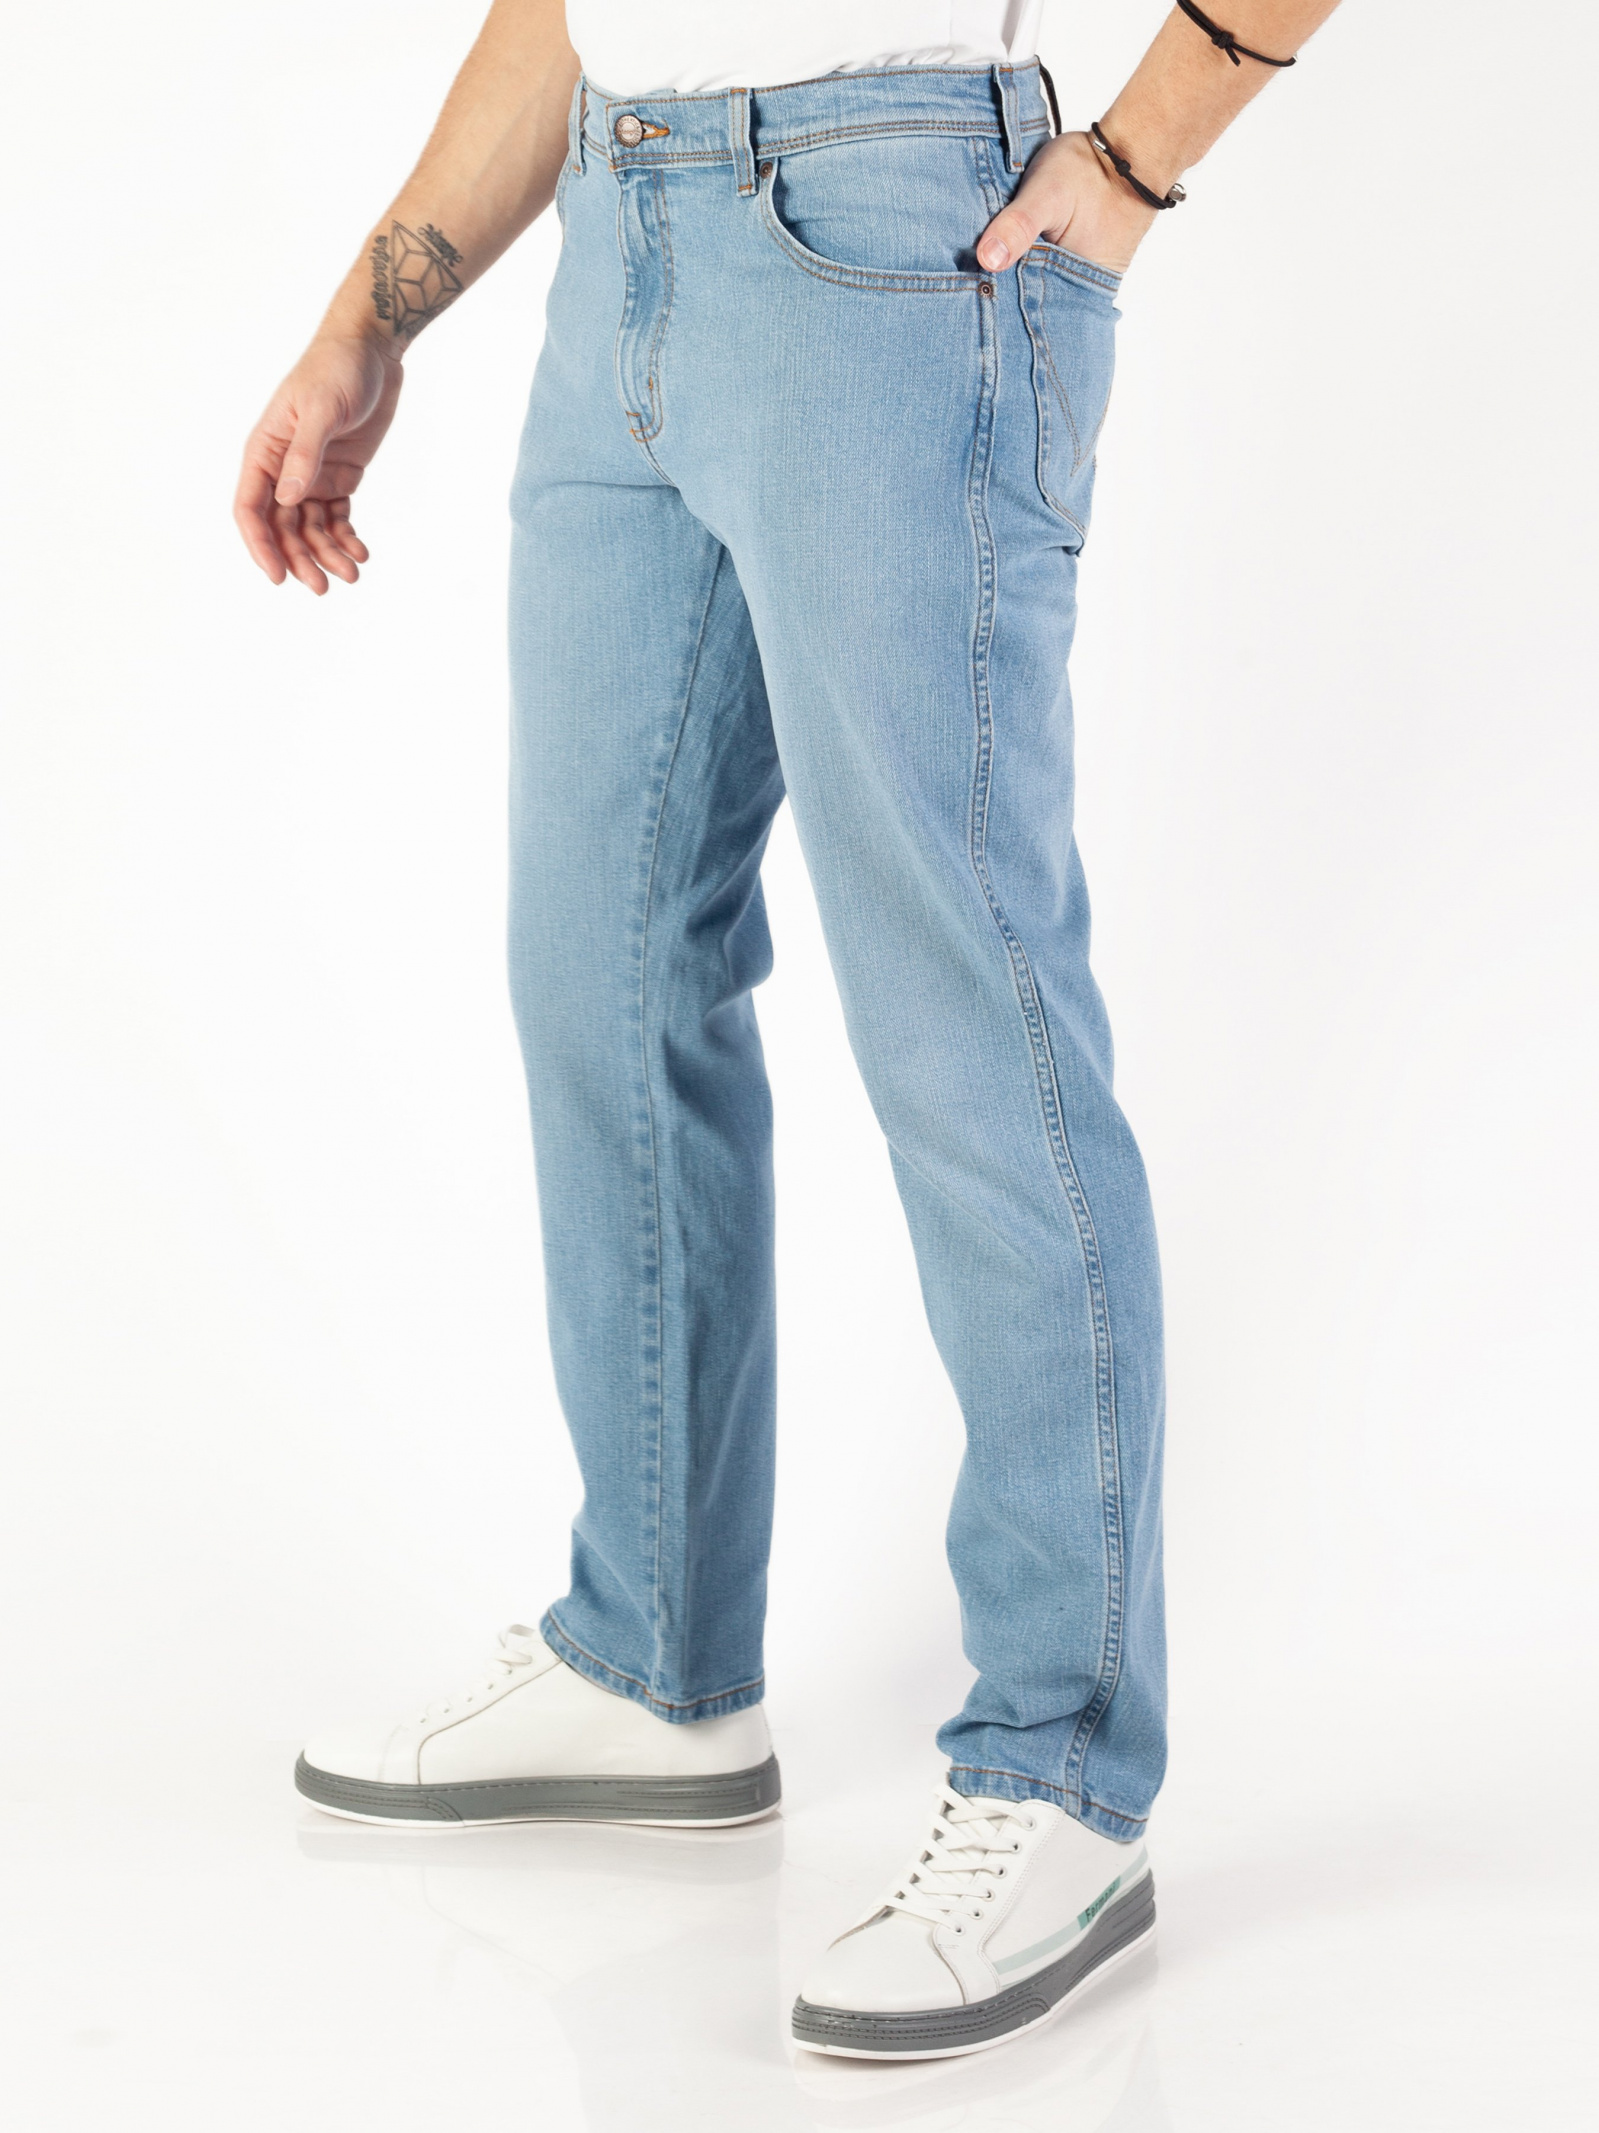 Зауженные джинсы Wrangler Texas Slim W12SHN42N_32 для мужчин, цвет: Голубой  - купить в Киеве, Украине в магазине Intertop: цена, фото, отзывы